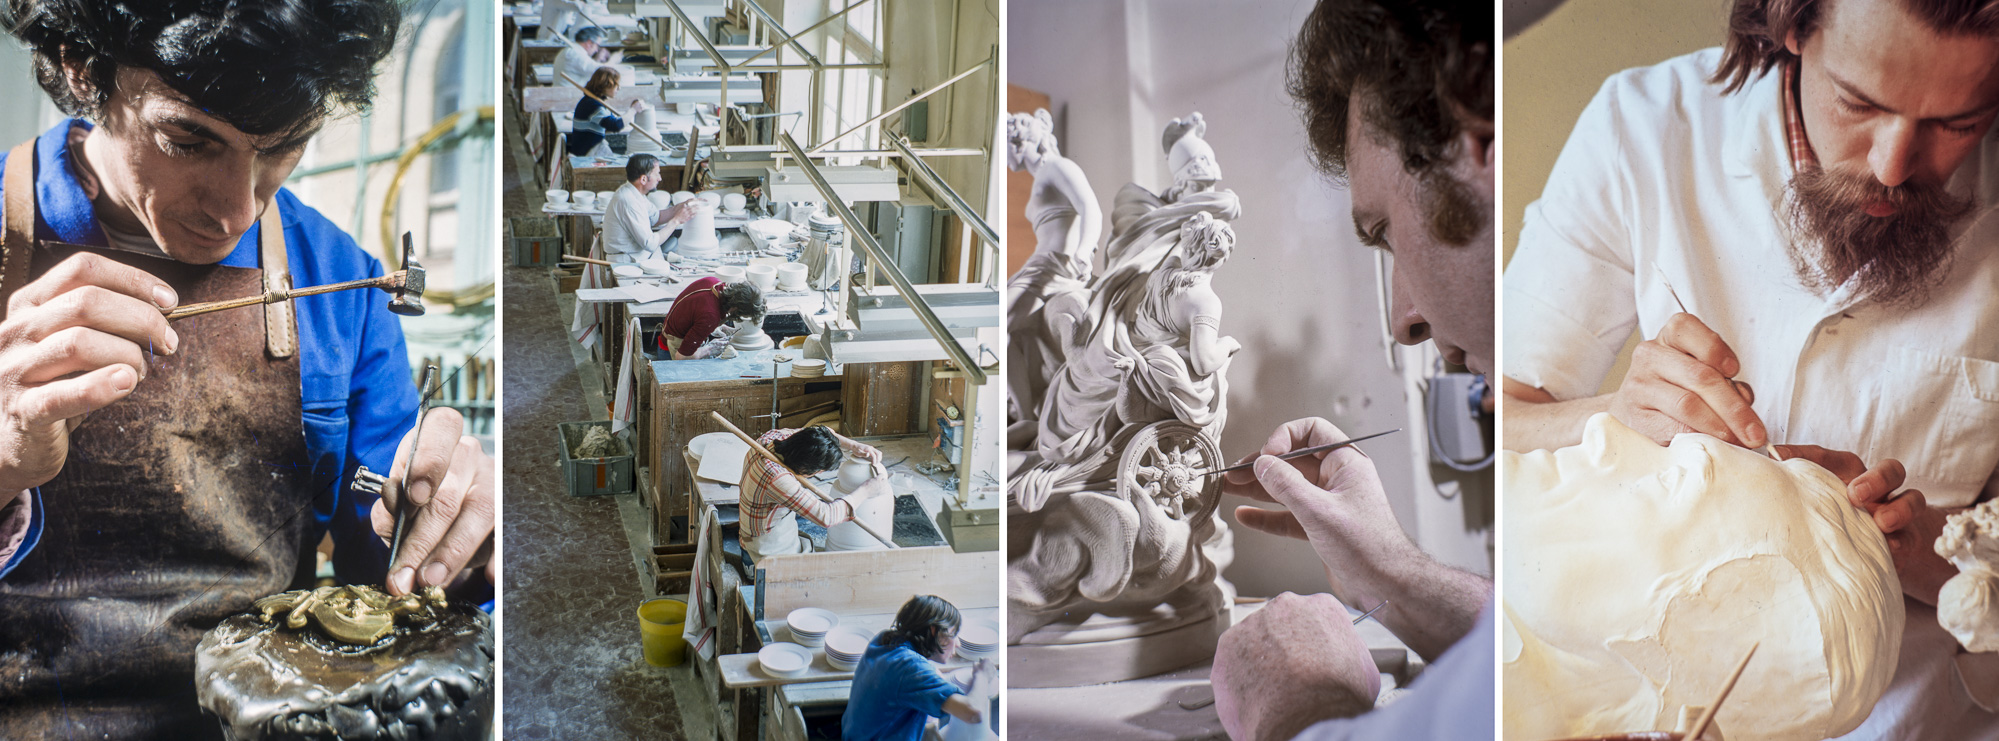 Sculpteur ciseleur sur bronze. - Atelier de tournassage - montage d'un Biscuit - sculpteur de moule en plâtre.